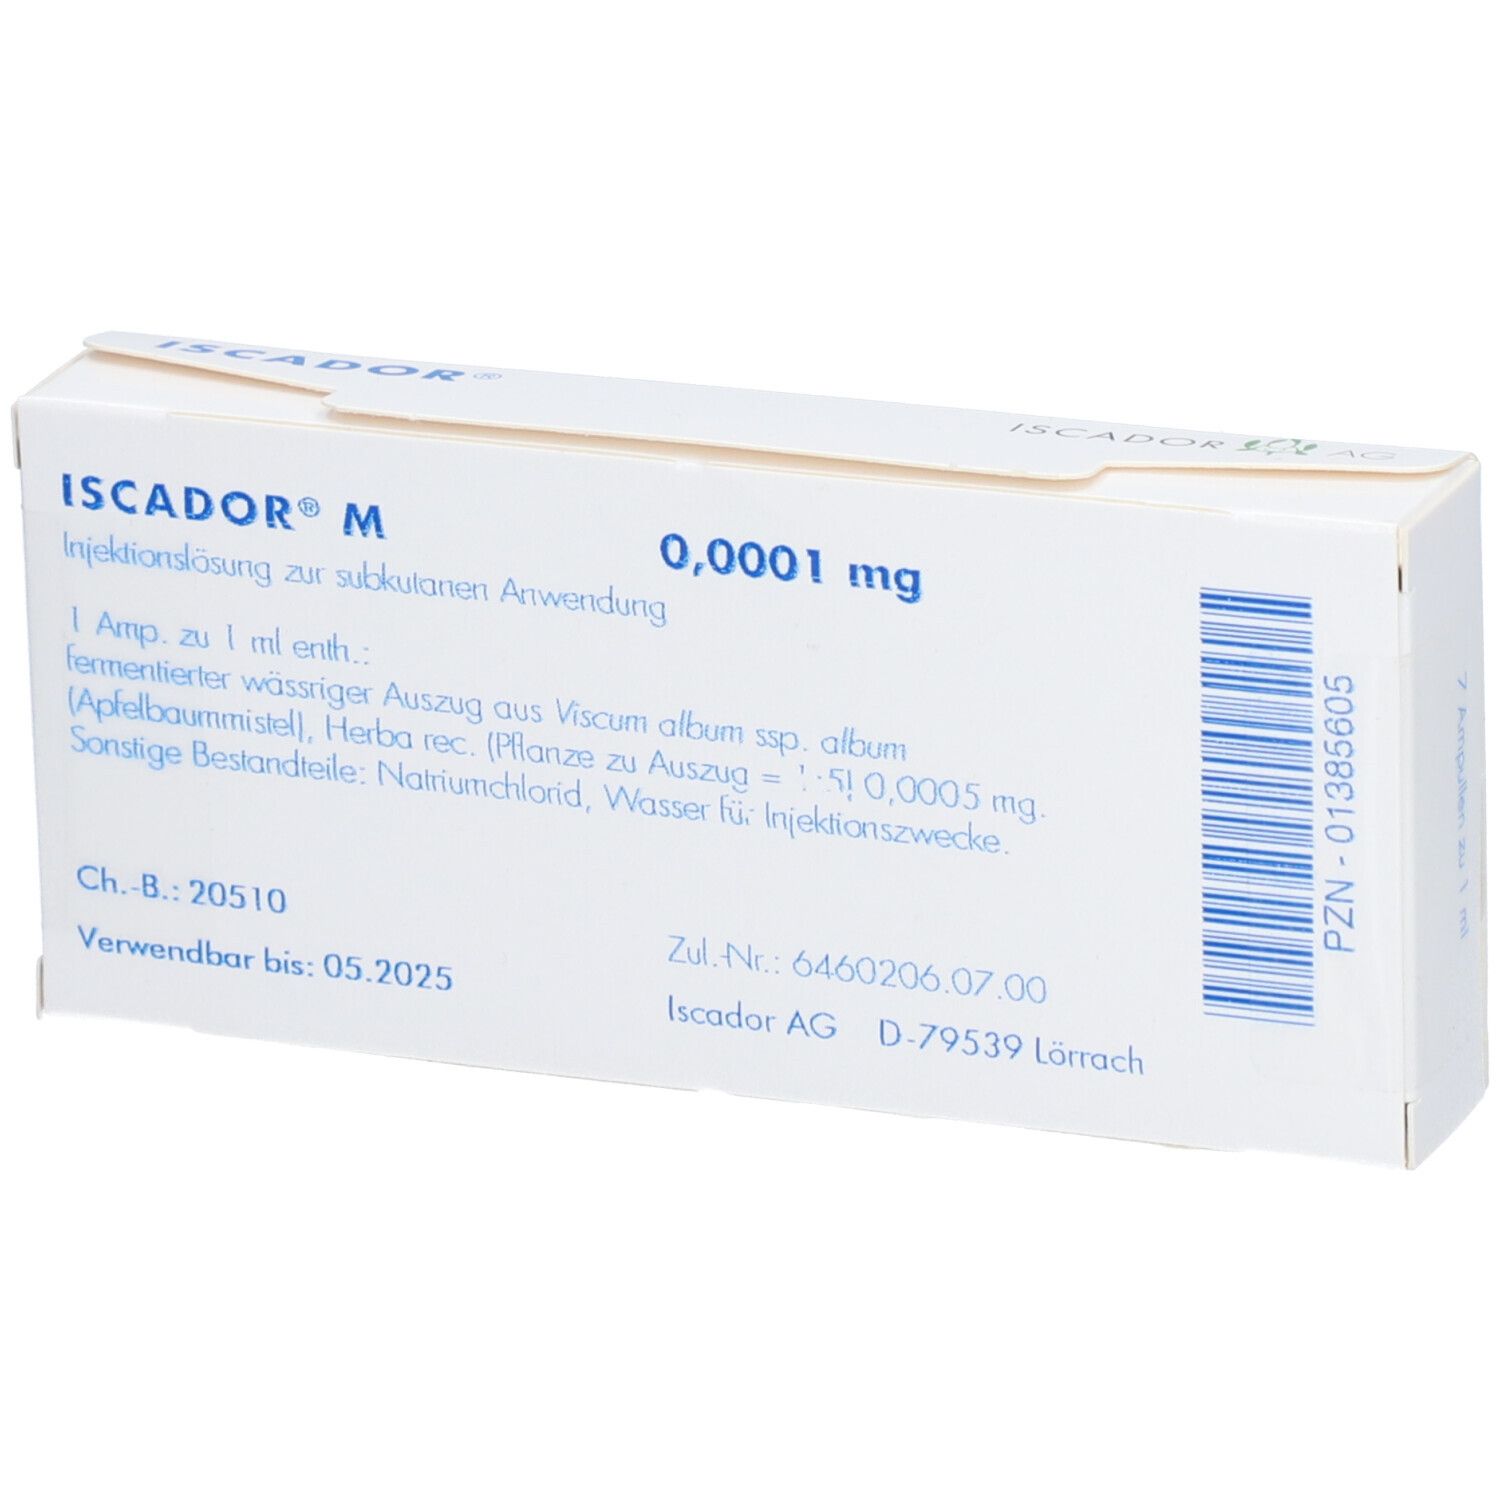 ISCADOR® M 0,0001 mg